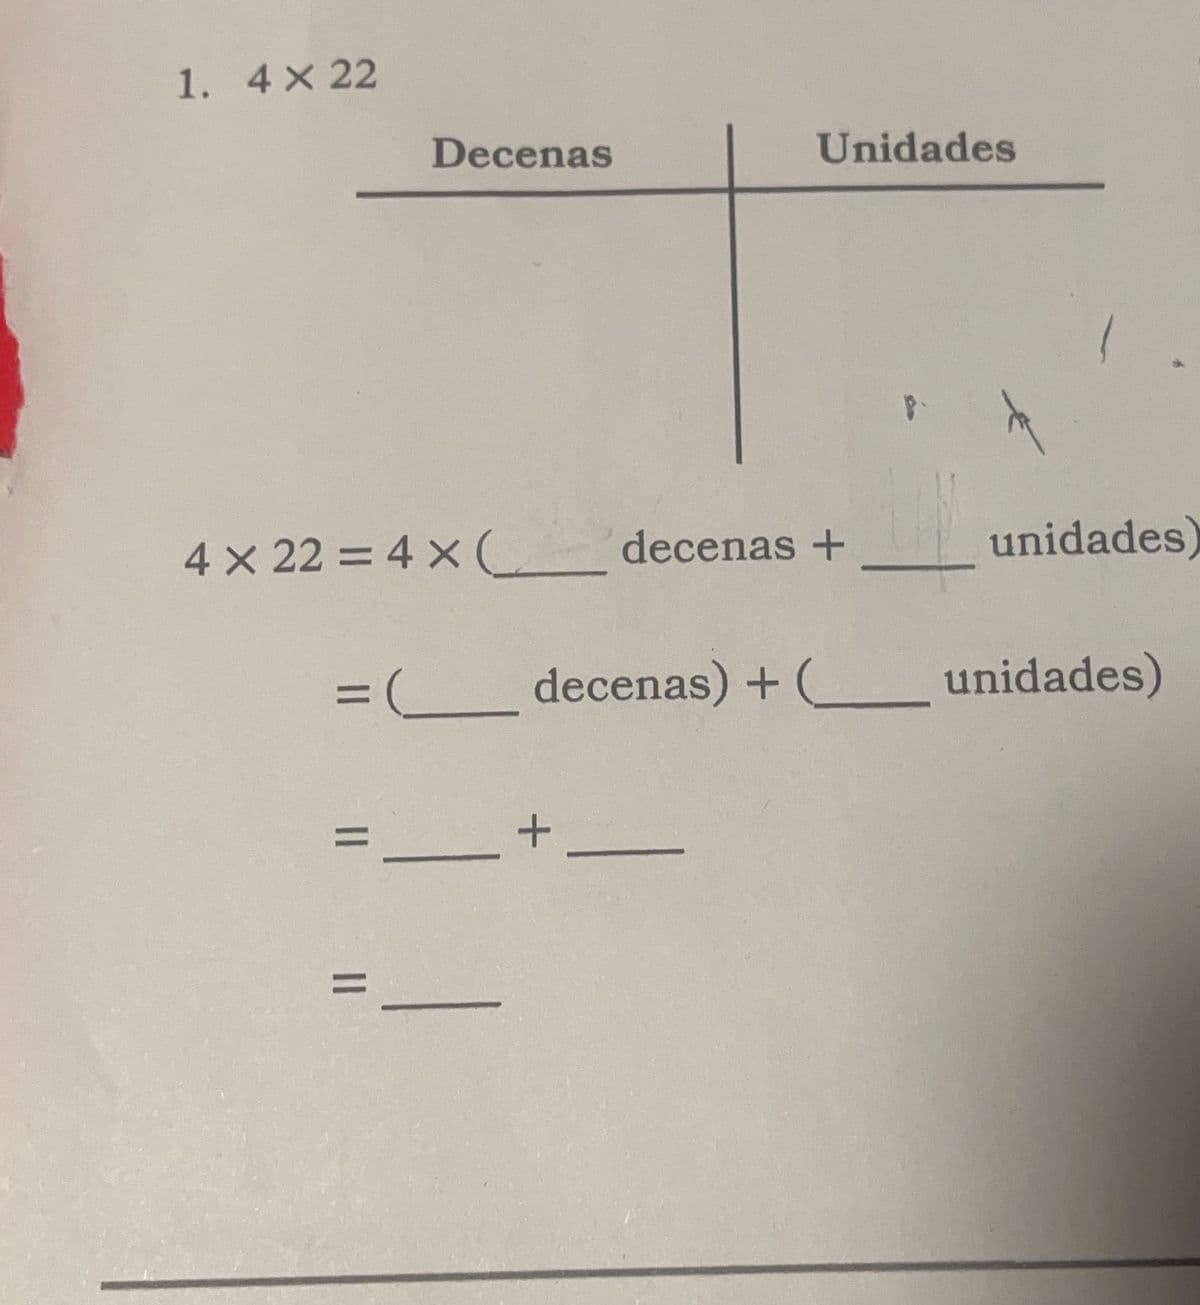 1. 4× 22
Decenas
4 x 22 = 4 x (________ decenas +
=
Unidades
=
= (__________ decenas) + (__________ unidades)
+-
unidades)